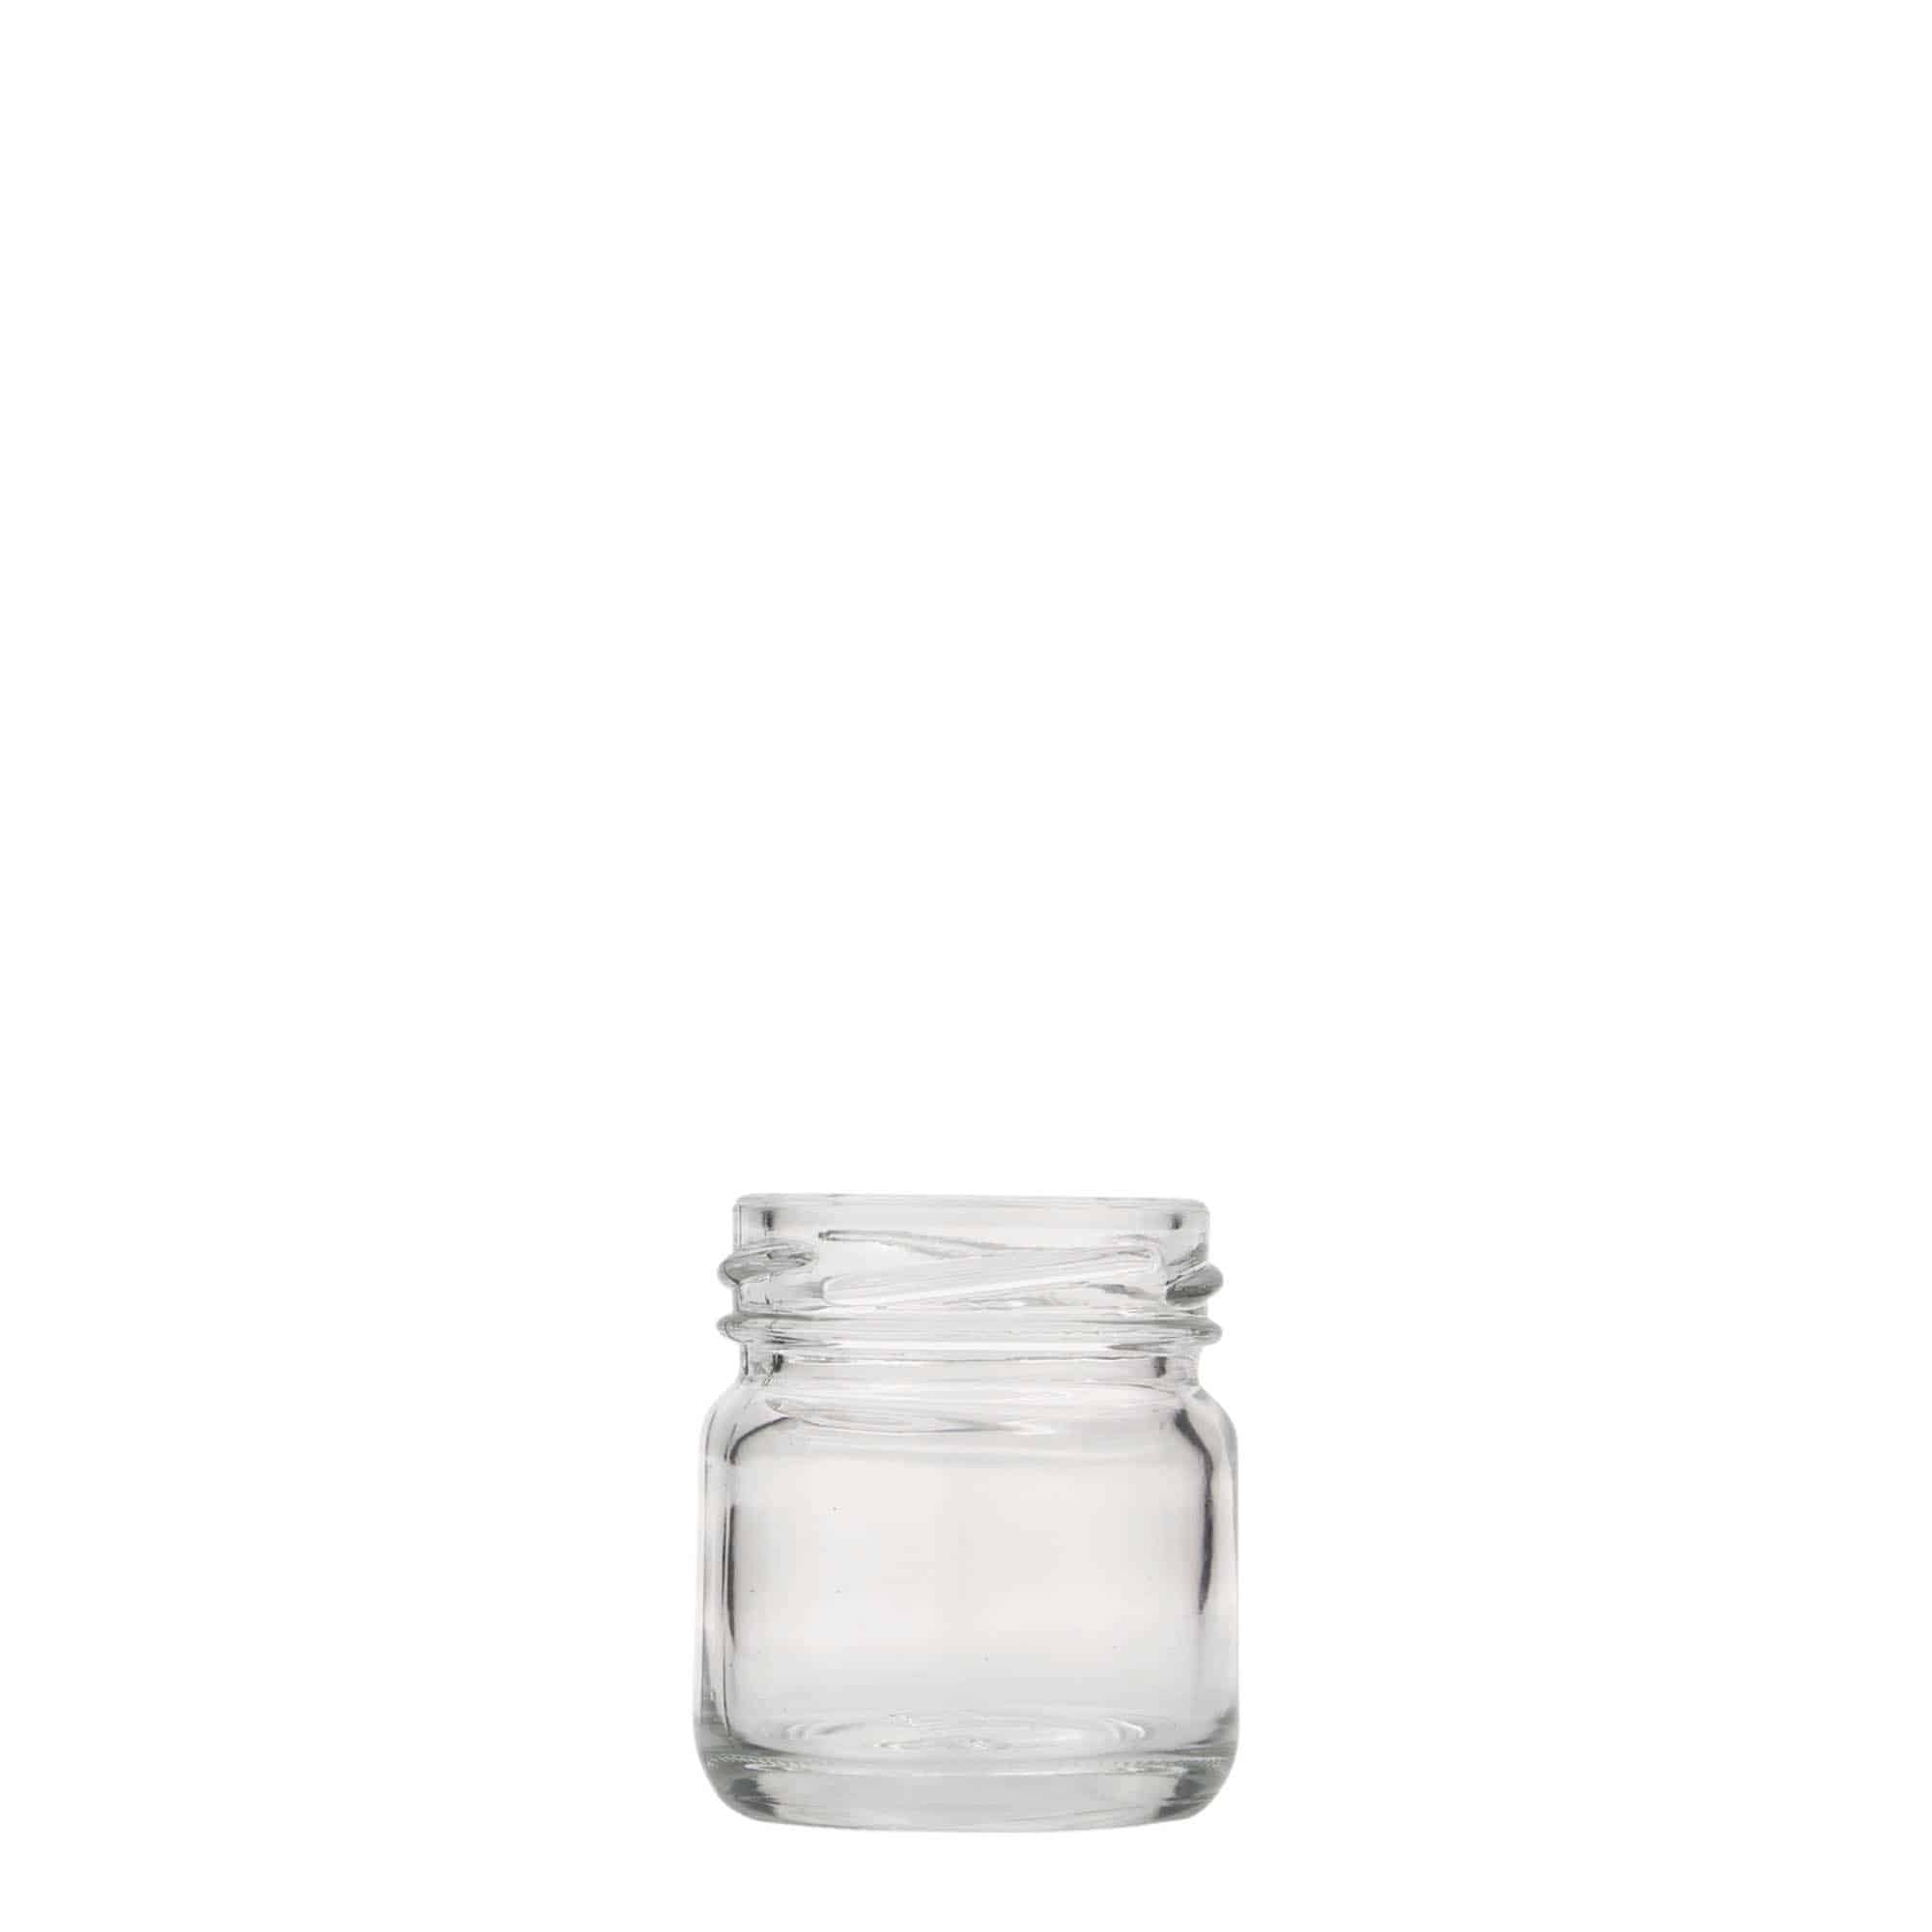 40 ml round jar, closure: twist off (TO 43)